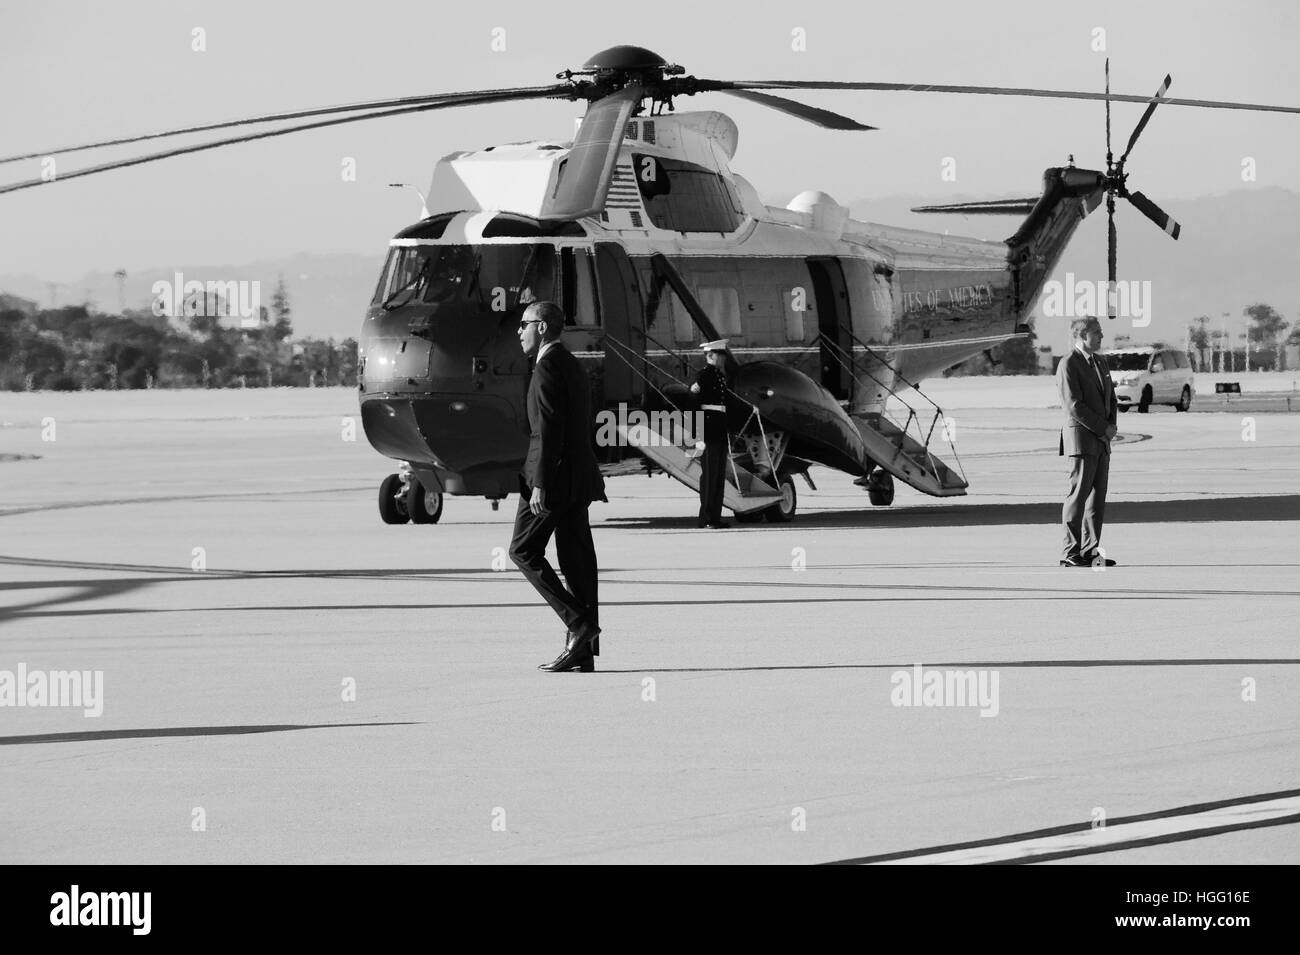 Le président Barack Obama arrive et promenades pour un marin, nighthawk à l'aéroport de LAX le 11 février 2016 à Los Angeles, Californie. Banque D'Images